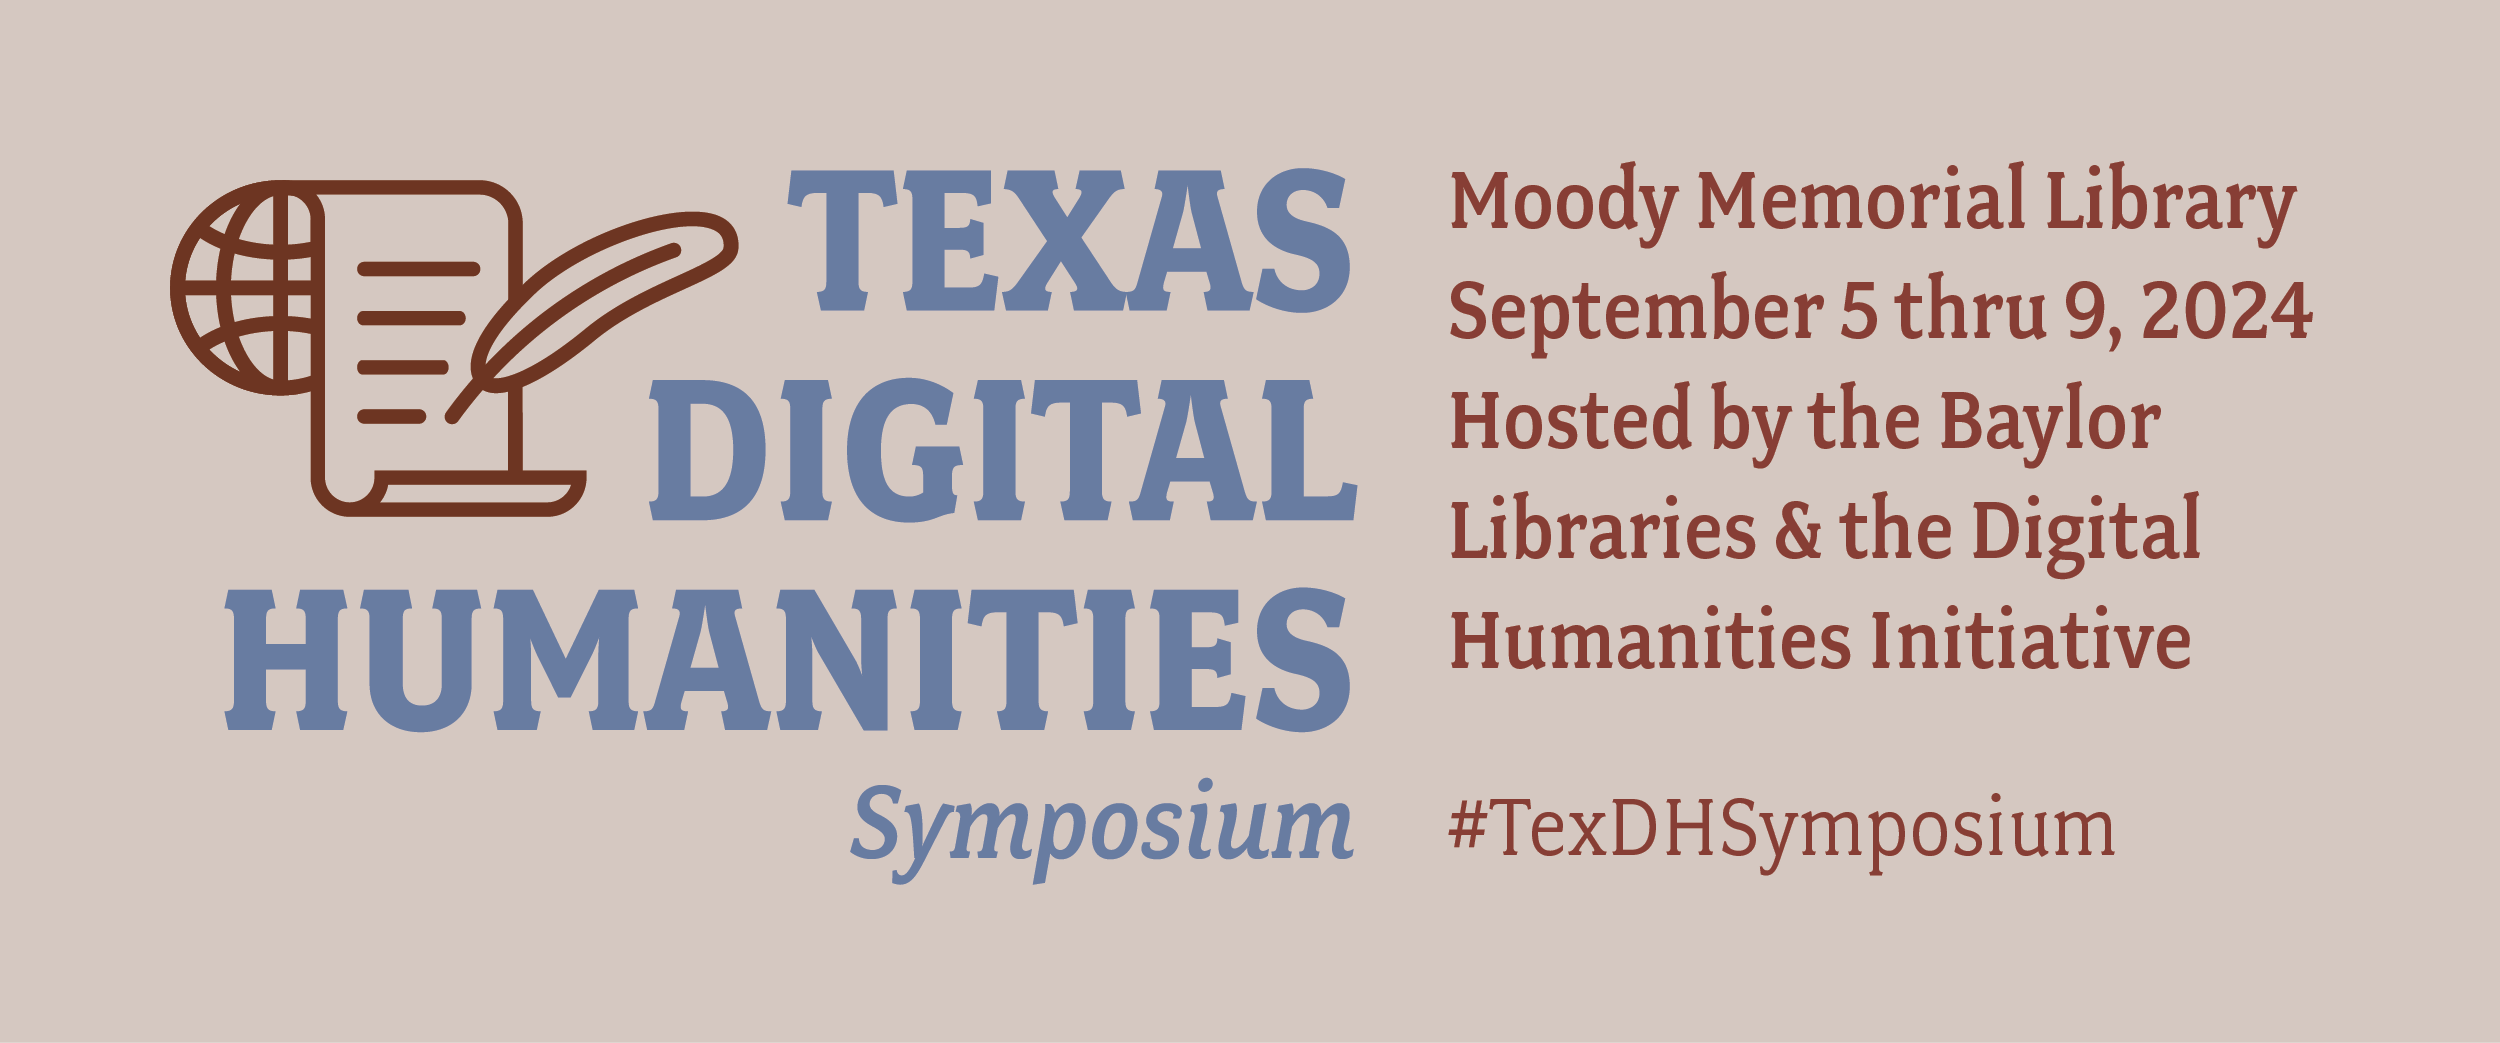 TX DH Symposium web header image